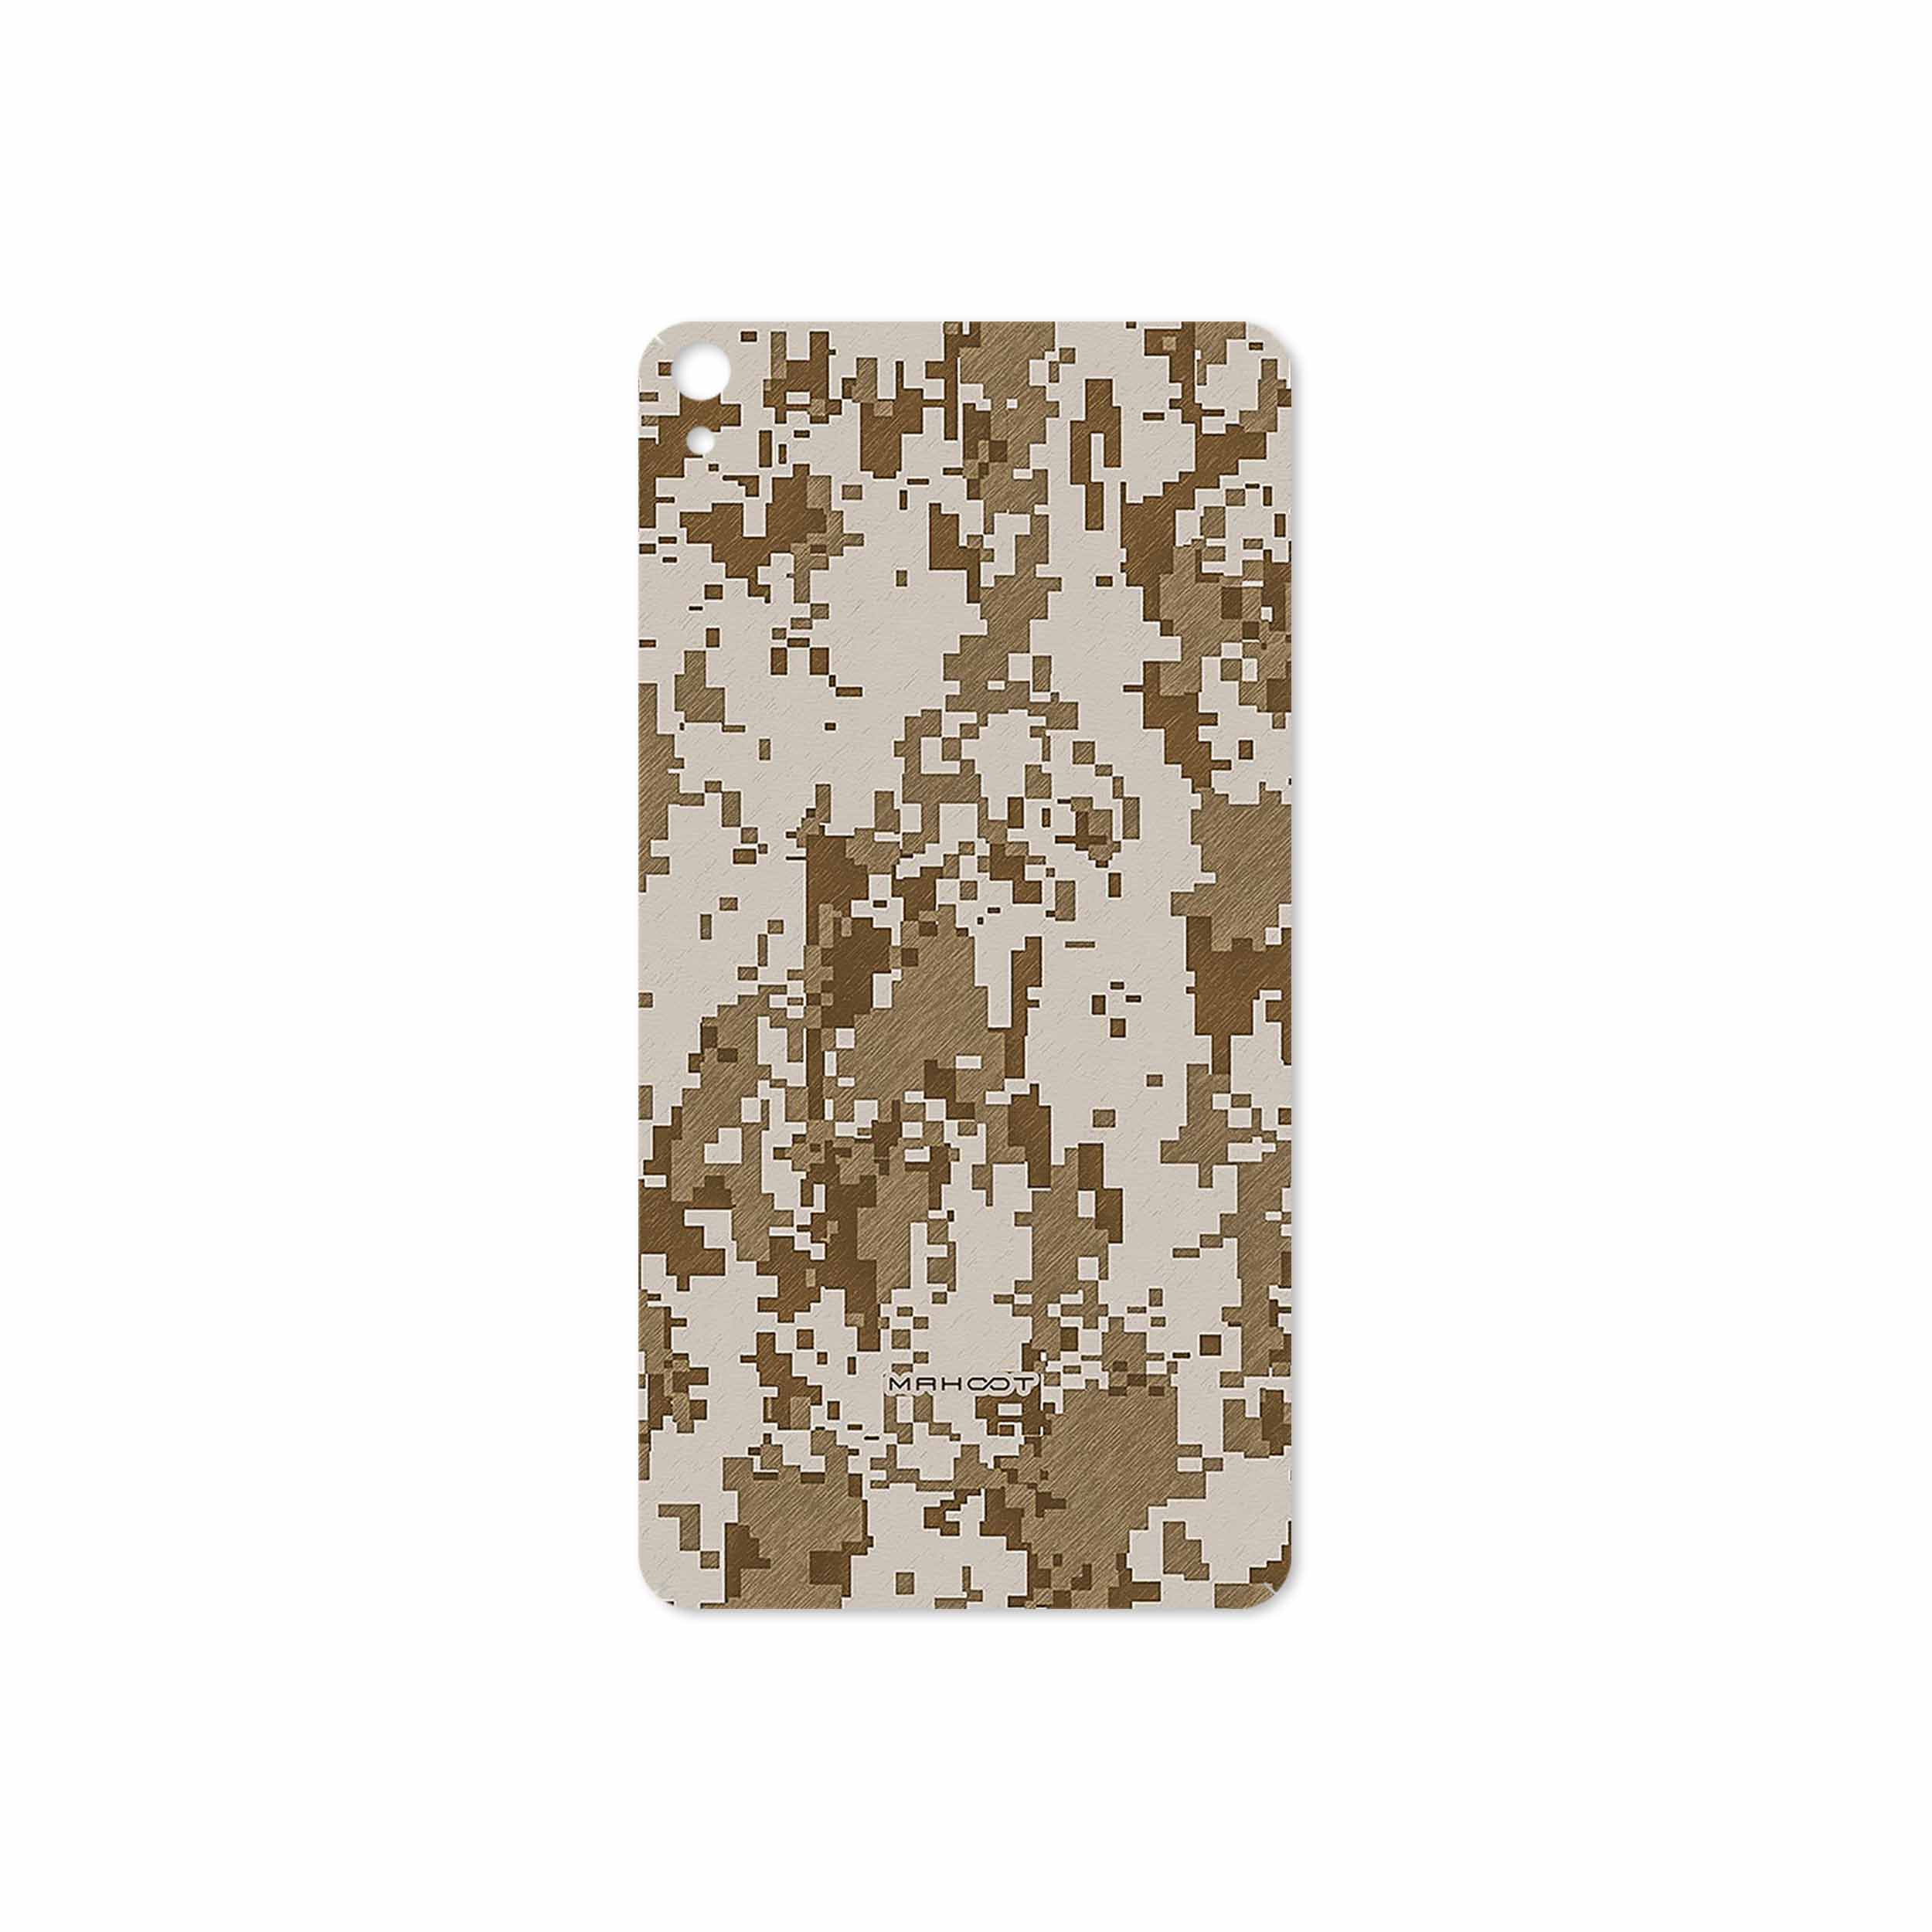 برچسب پوششی ماهوت مدل Army-Desert-Pixel مناسب برای تبلت لنوو Phab B1 2015